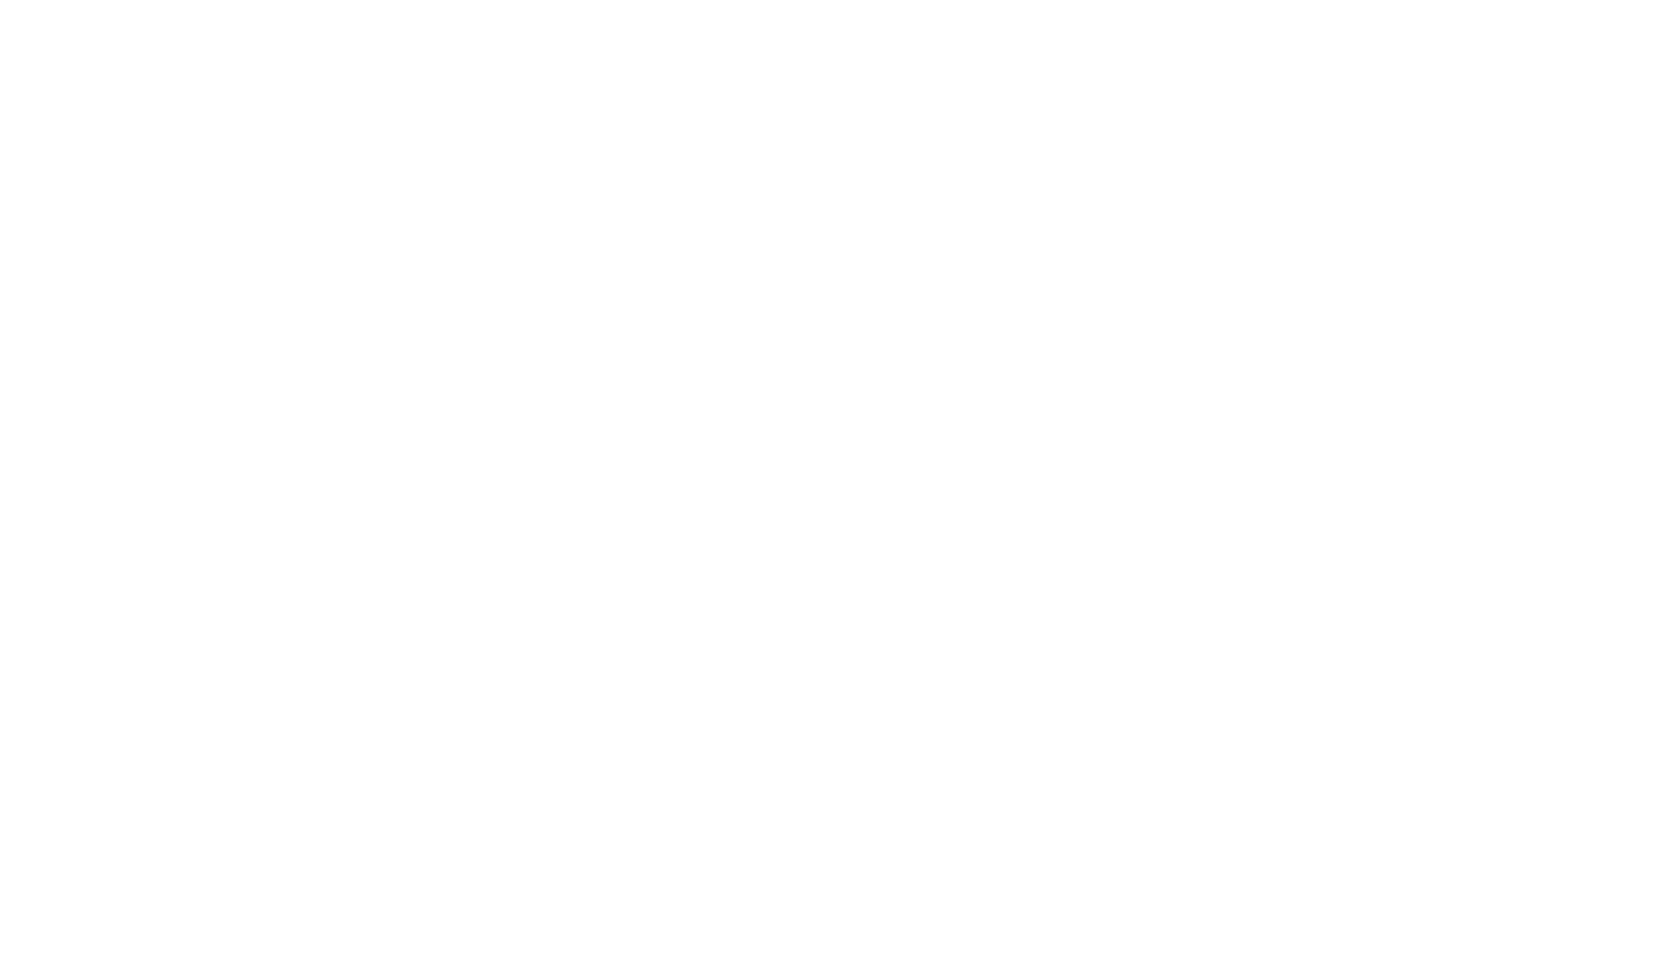 QC Toolbox wordmark